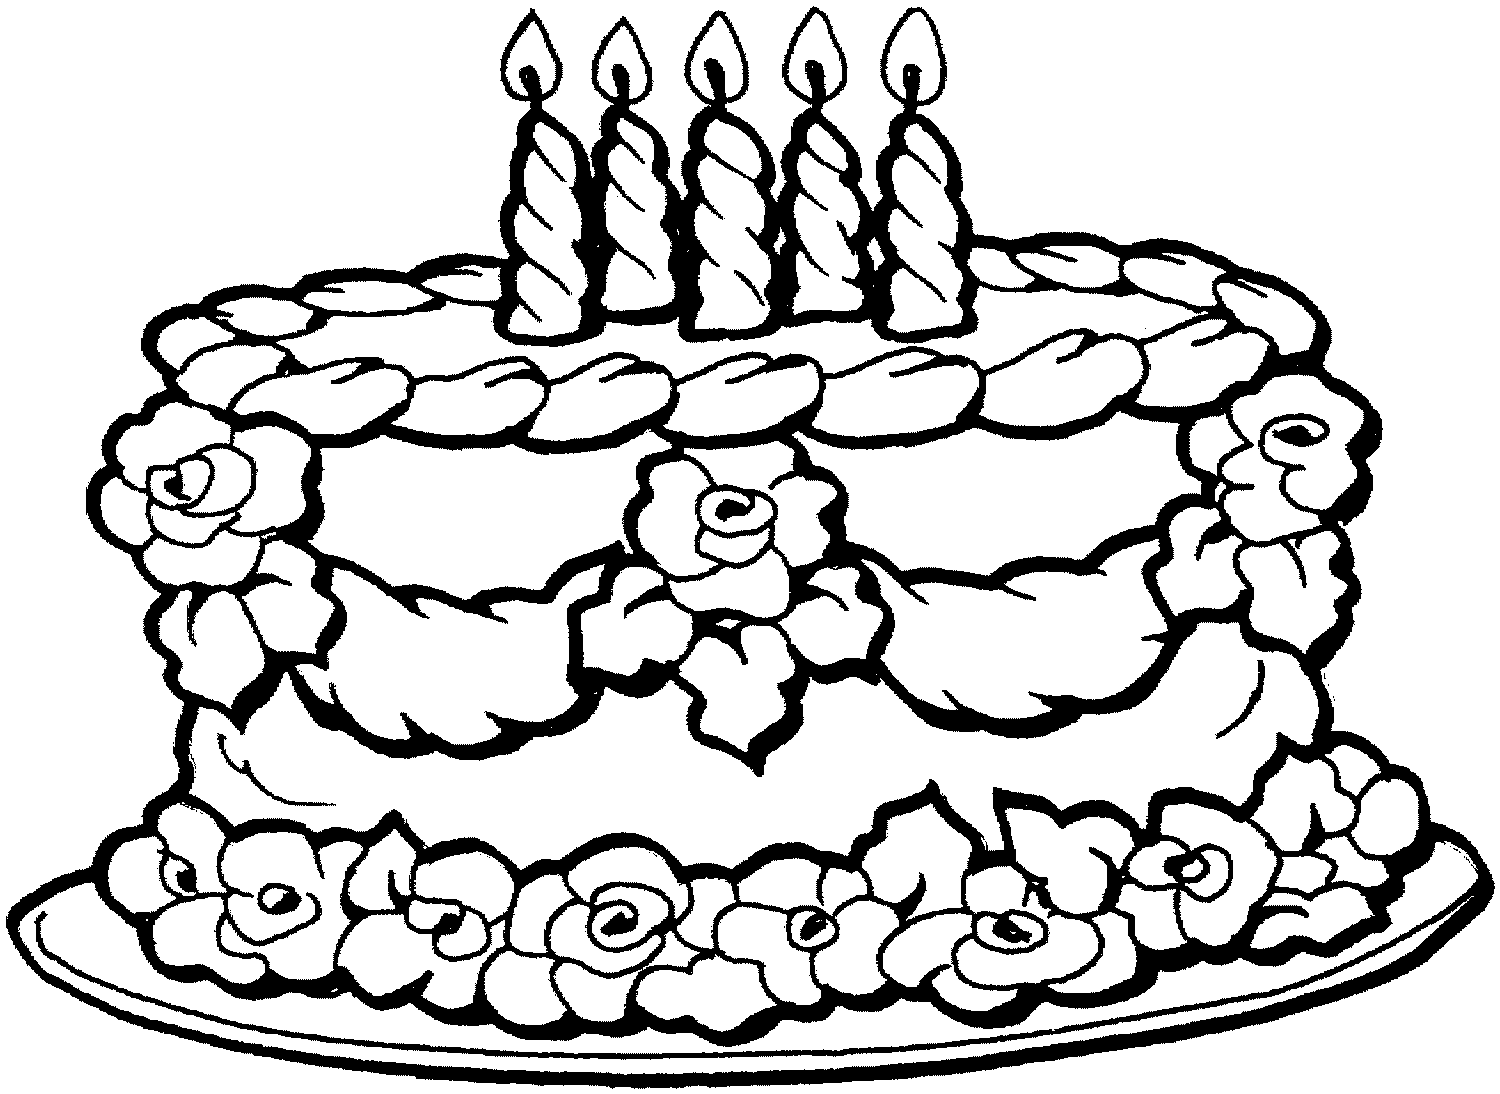 Cake coloring #4, Download drawings